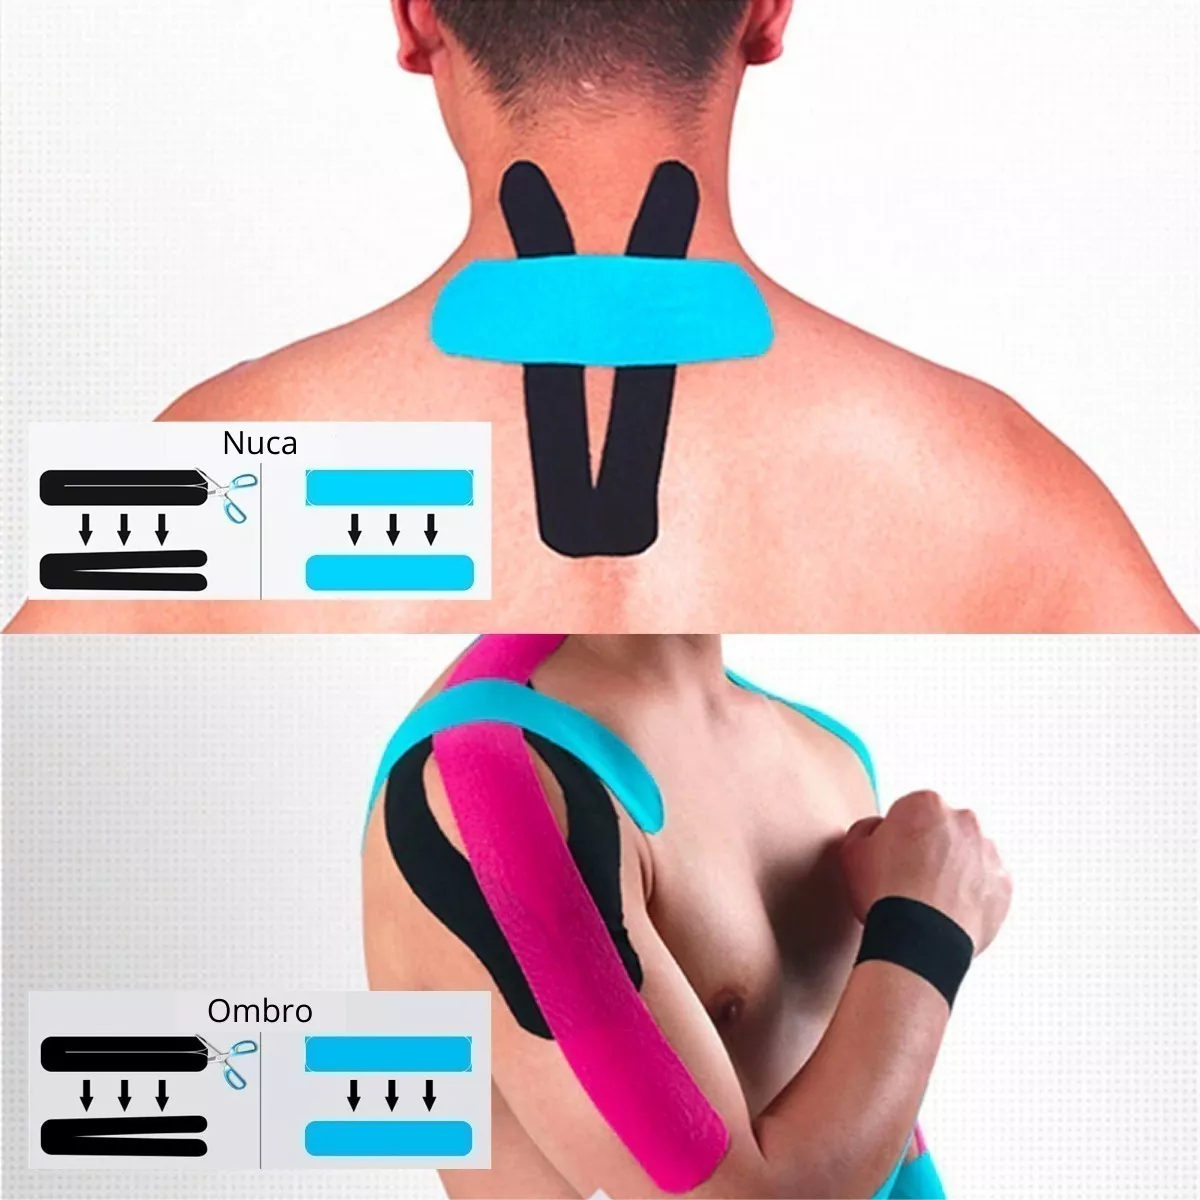 Segunda imagem para pesquisa de fita jogador usam dor muscular